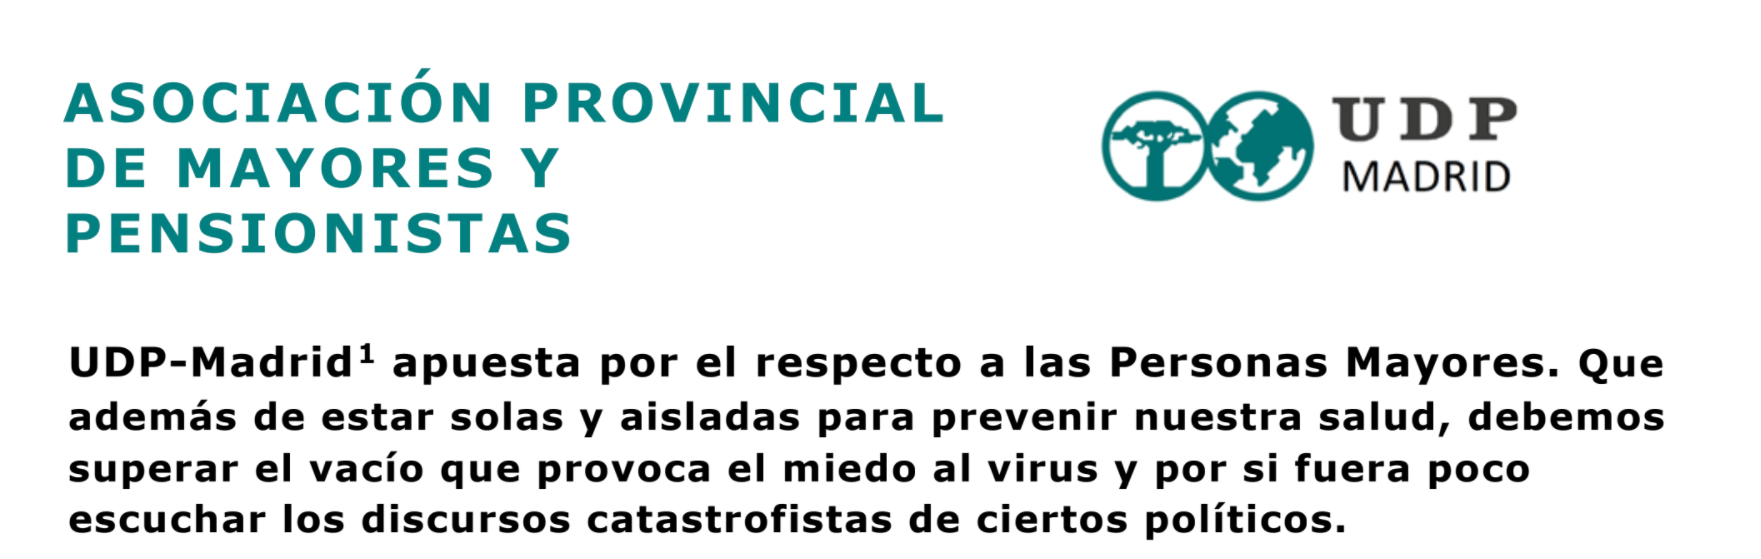 UDP Madrid apuesta por el respeto a las Personas Mayores